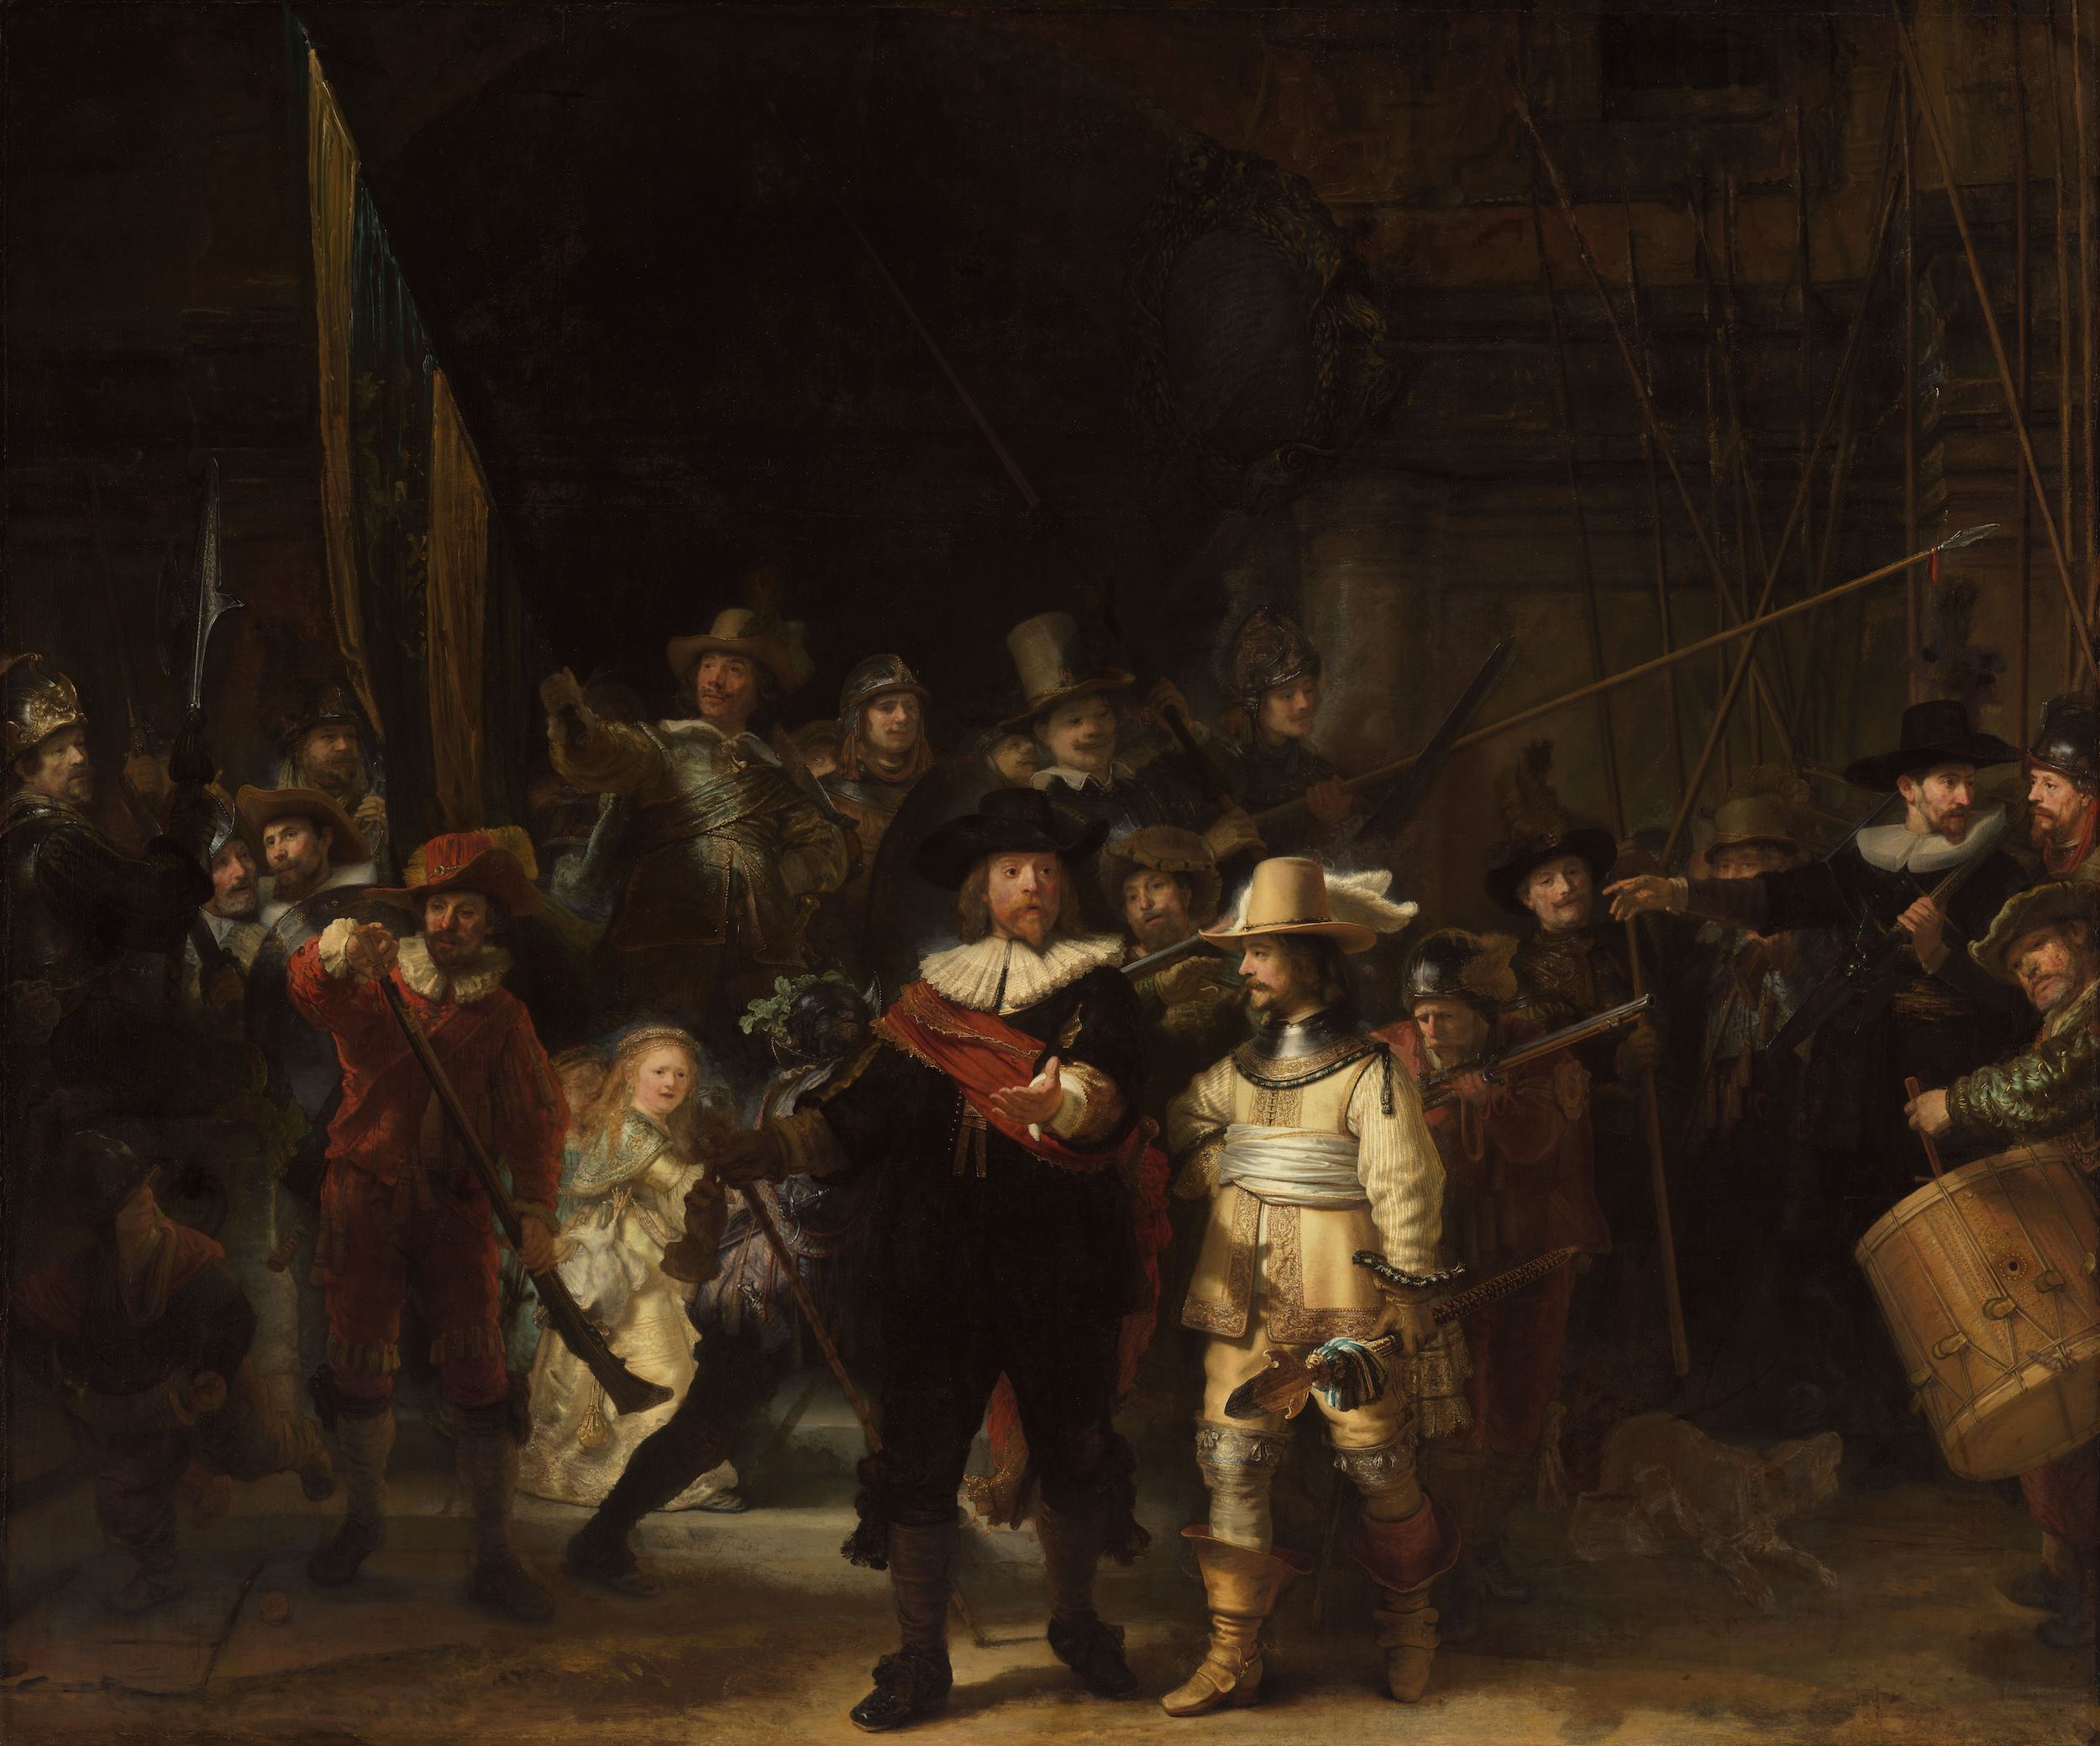 The Night Watch by Rembrandt van Rijn - 1642 - 379.5 × 453.5 cm Rijksmuseum